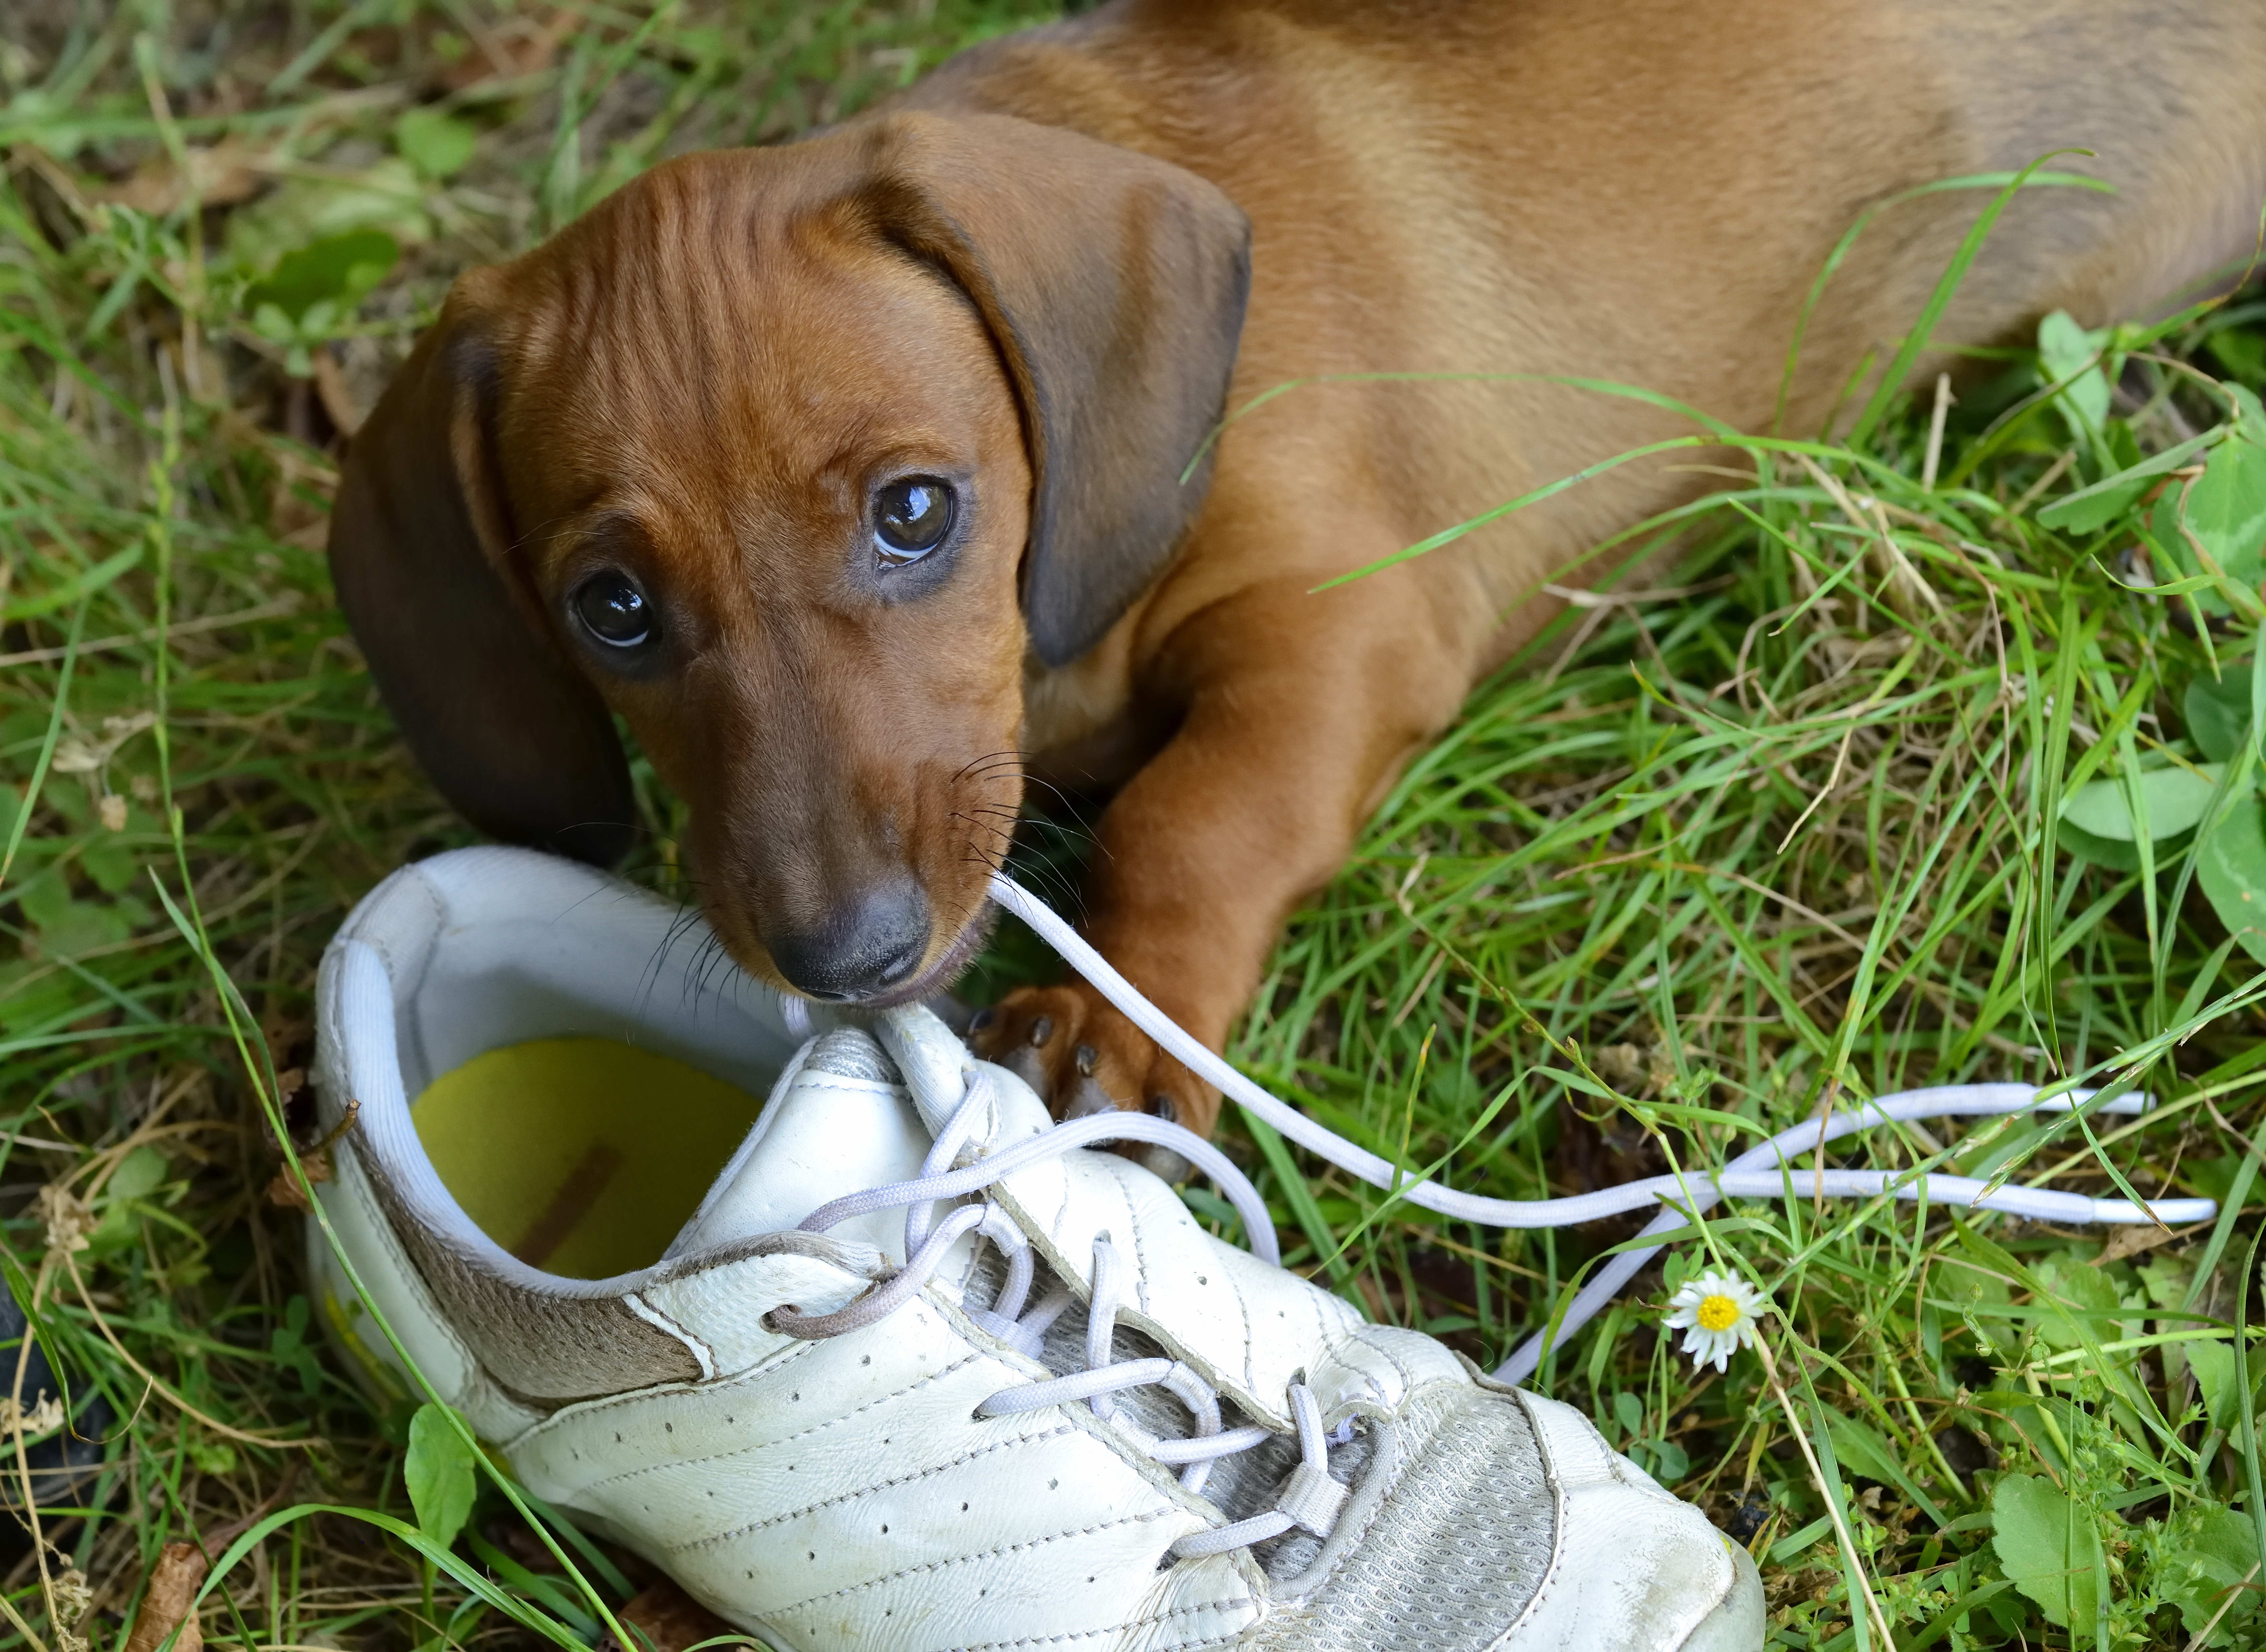 dog eating shoe